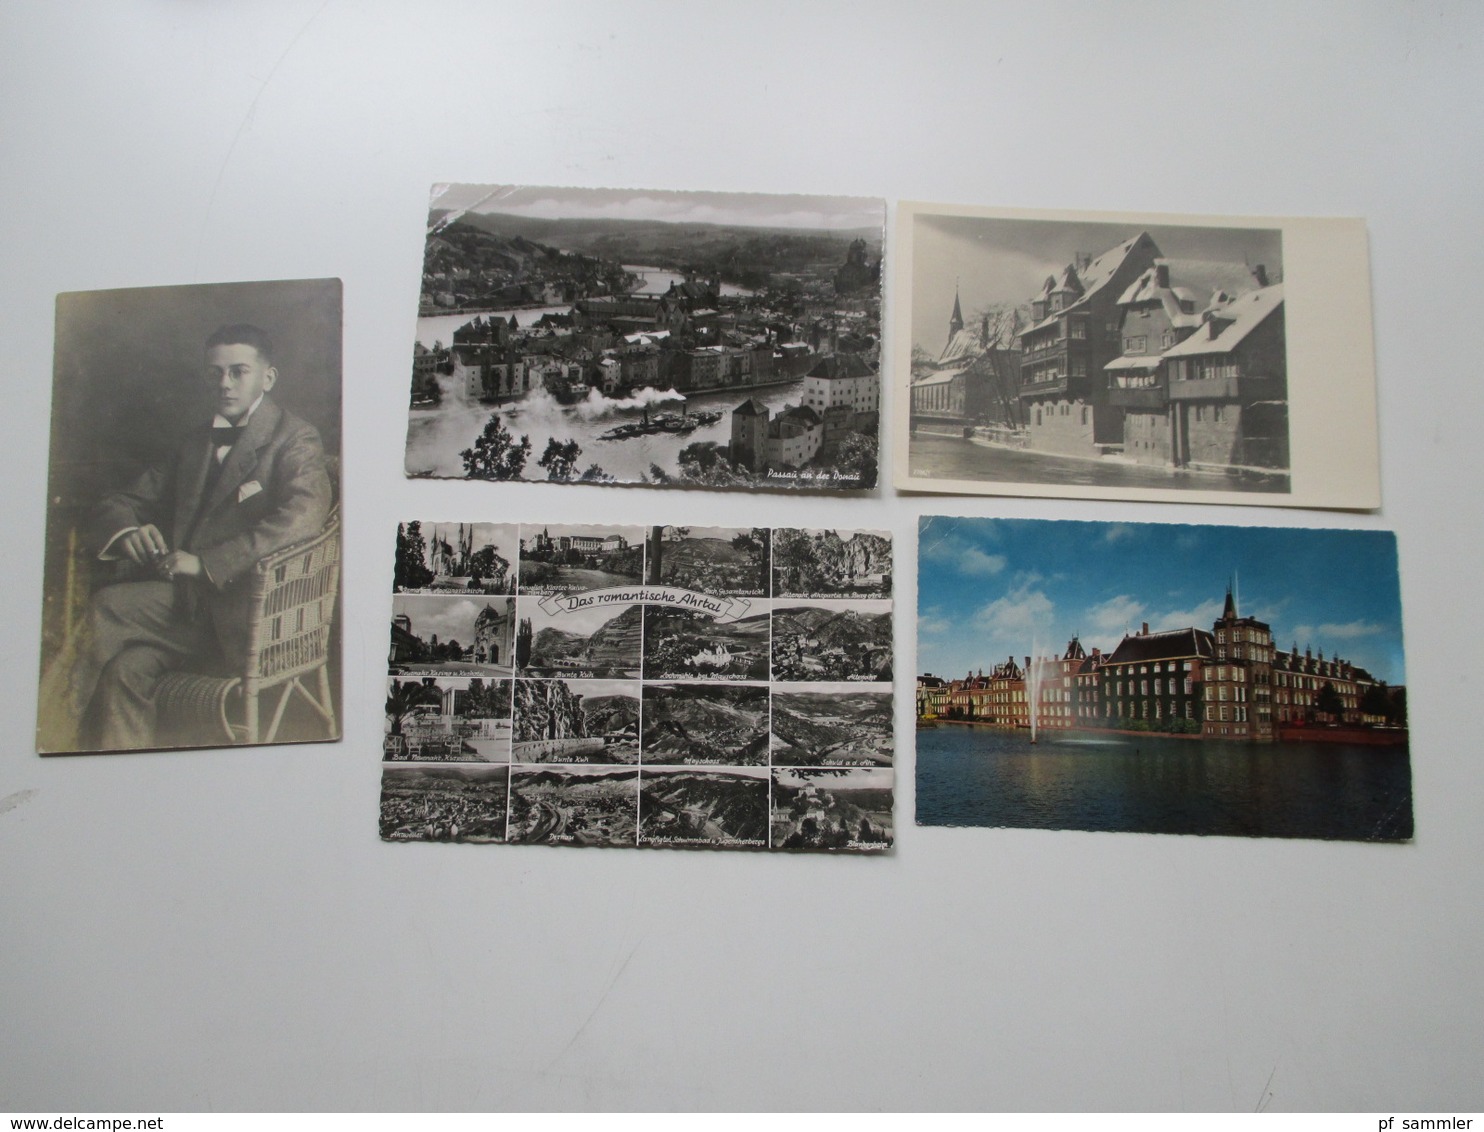 AK Deutschland / etwas Europa ca. 1909 - 50er Jahre insgesamt 135 Karten / ein paar Fotos. Stöberposten!!